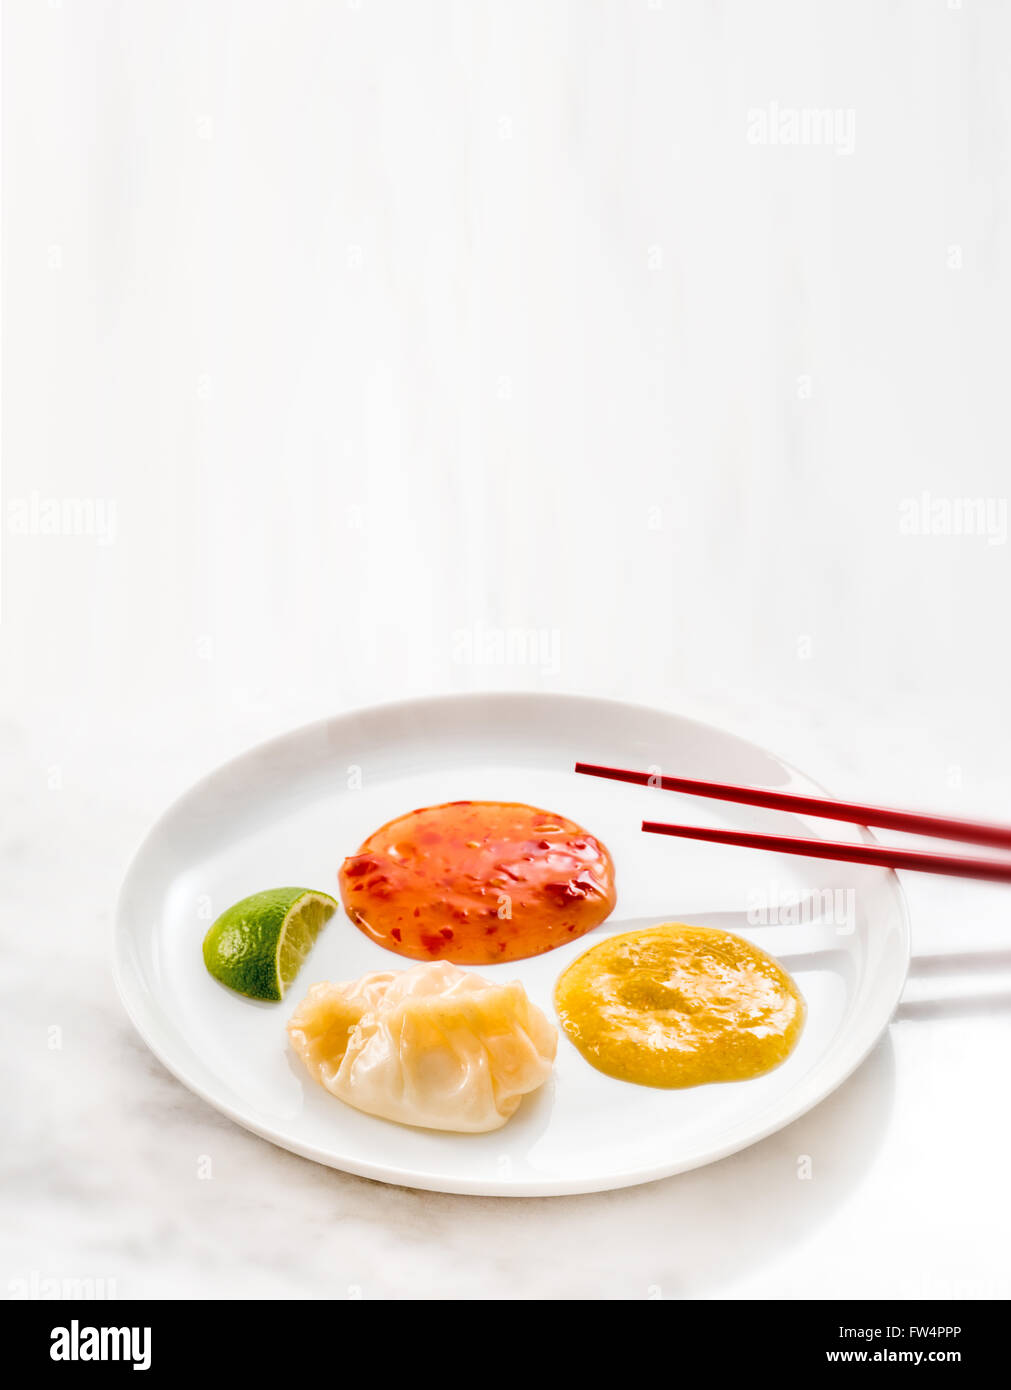 Jiaozi raviolis chinois farcis nourriture exotique chinois asiatique l'Asie des baguettes. Bien épicé, différent, unique pour les célibataires, des aliments de préparation rapide Banque D'Images